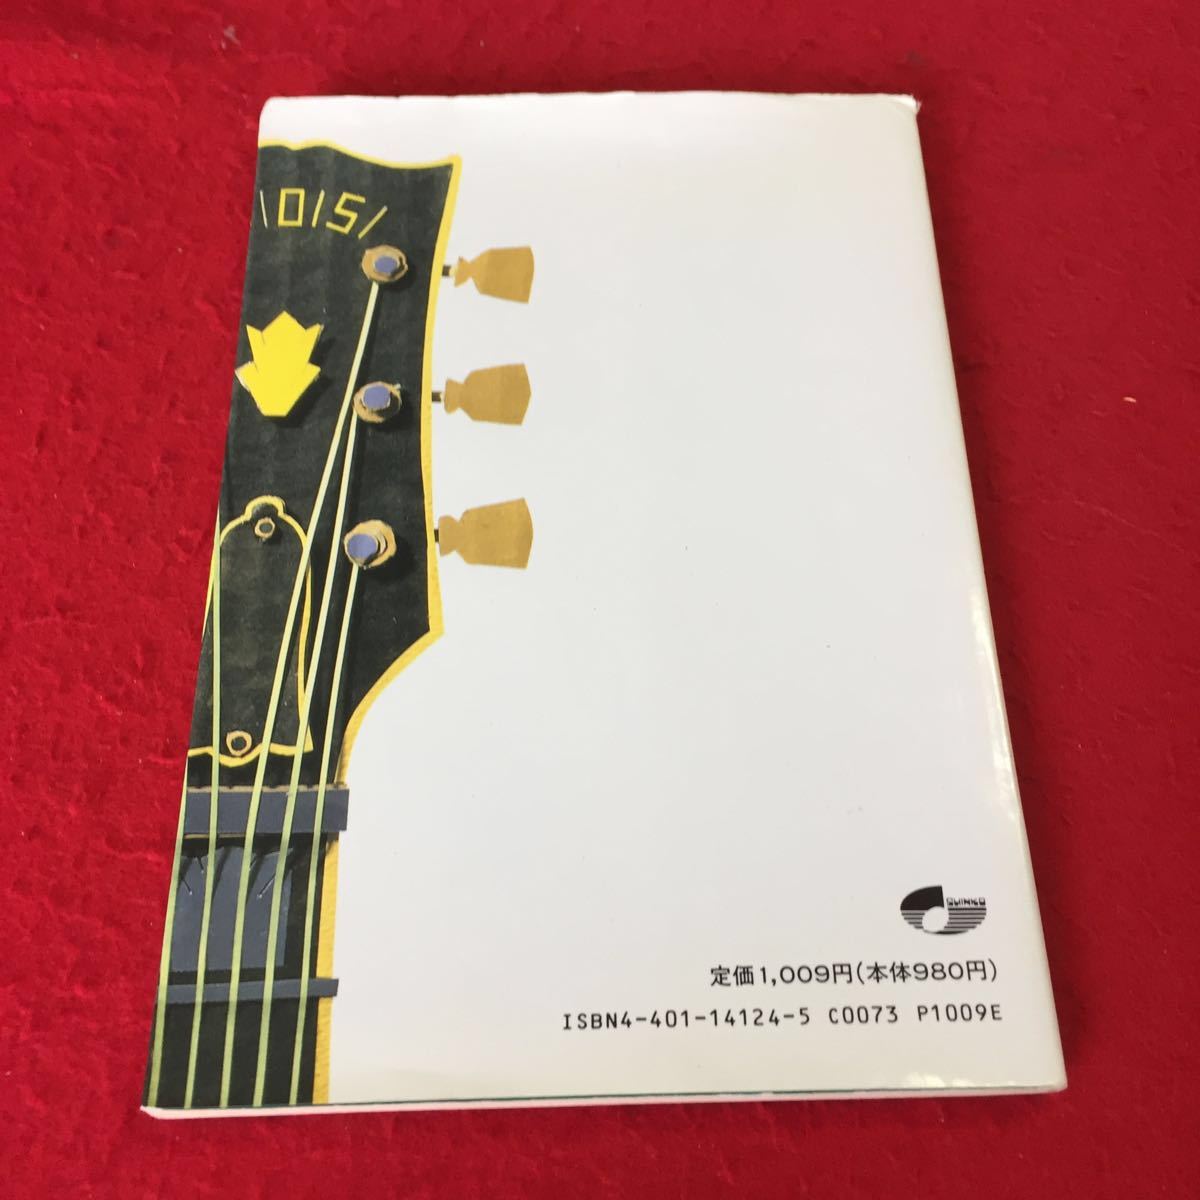 YW-183 よくわかるロックギター・コード入門 青山忠英 シンコー ミュージック すぐに役立つコード・ド・プレイのノウハウを満載 1993年発行_傷、汚れ有り